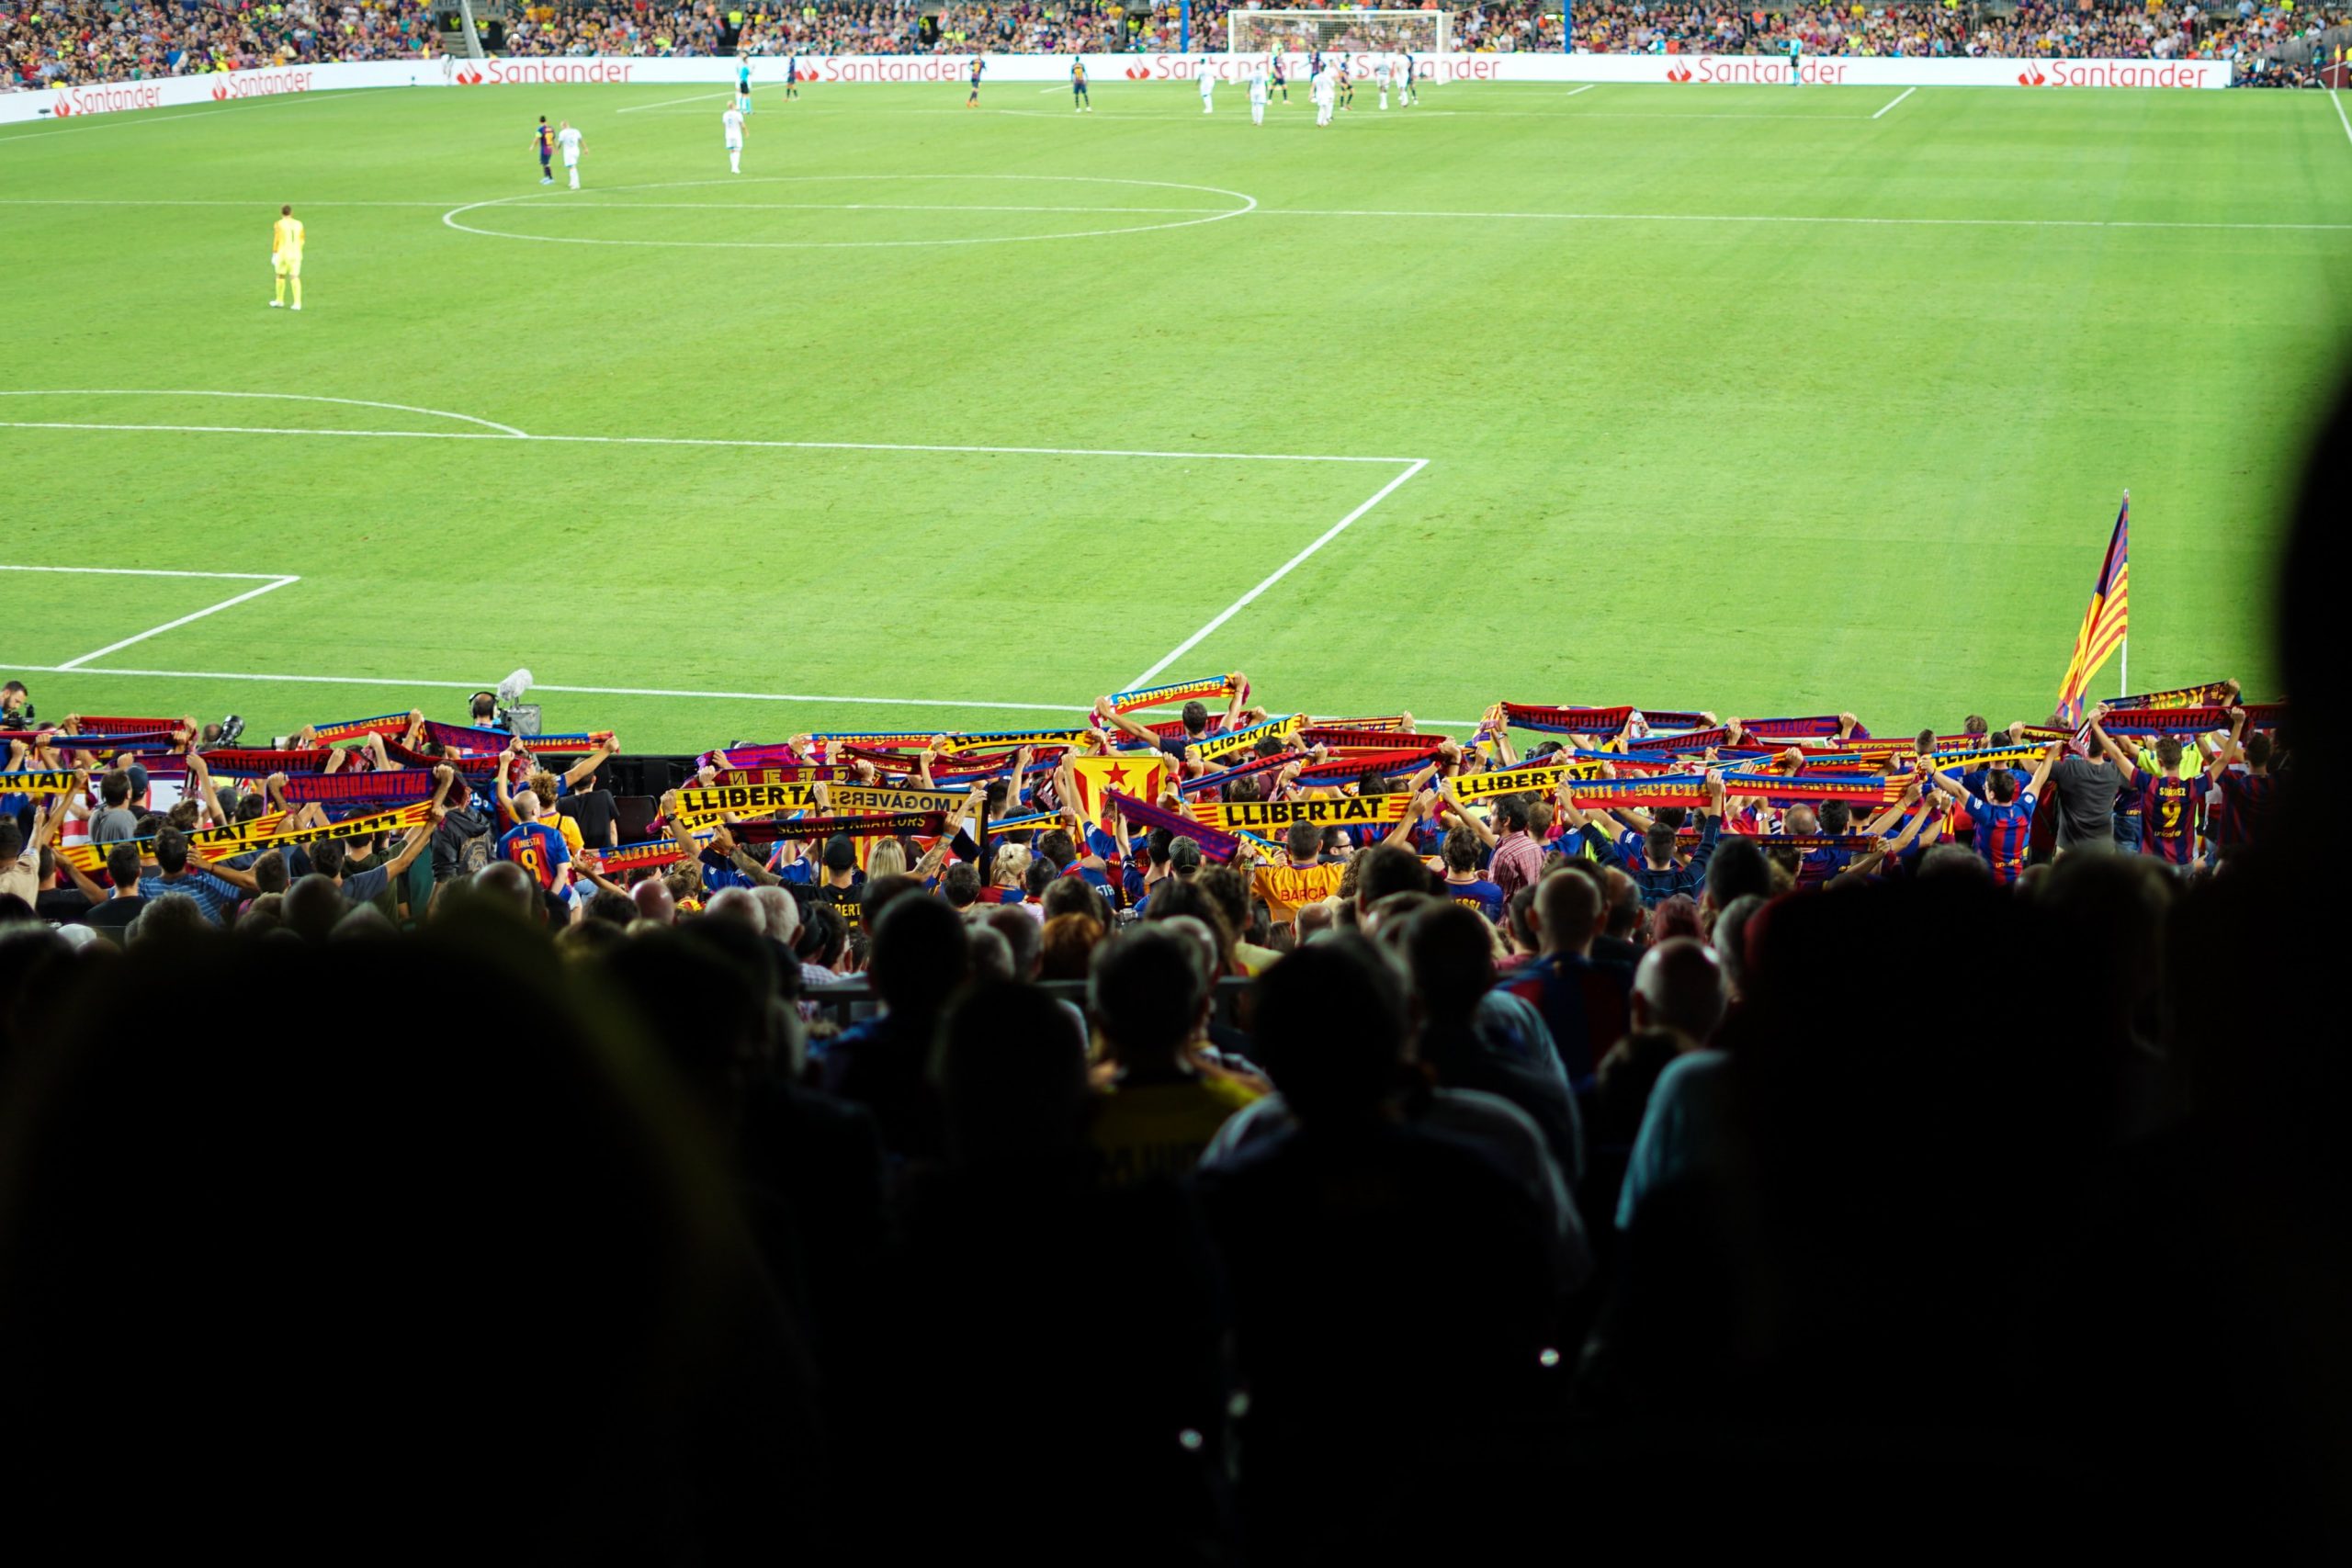 Torcedores do Barcelona levantam faixas pedindo "liberdade".